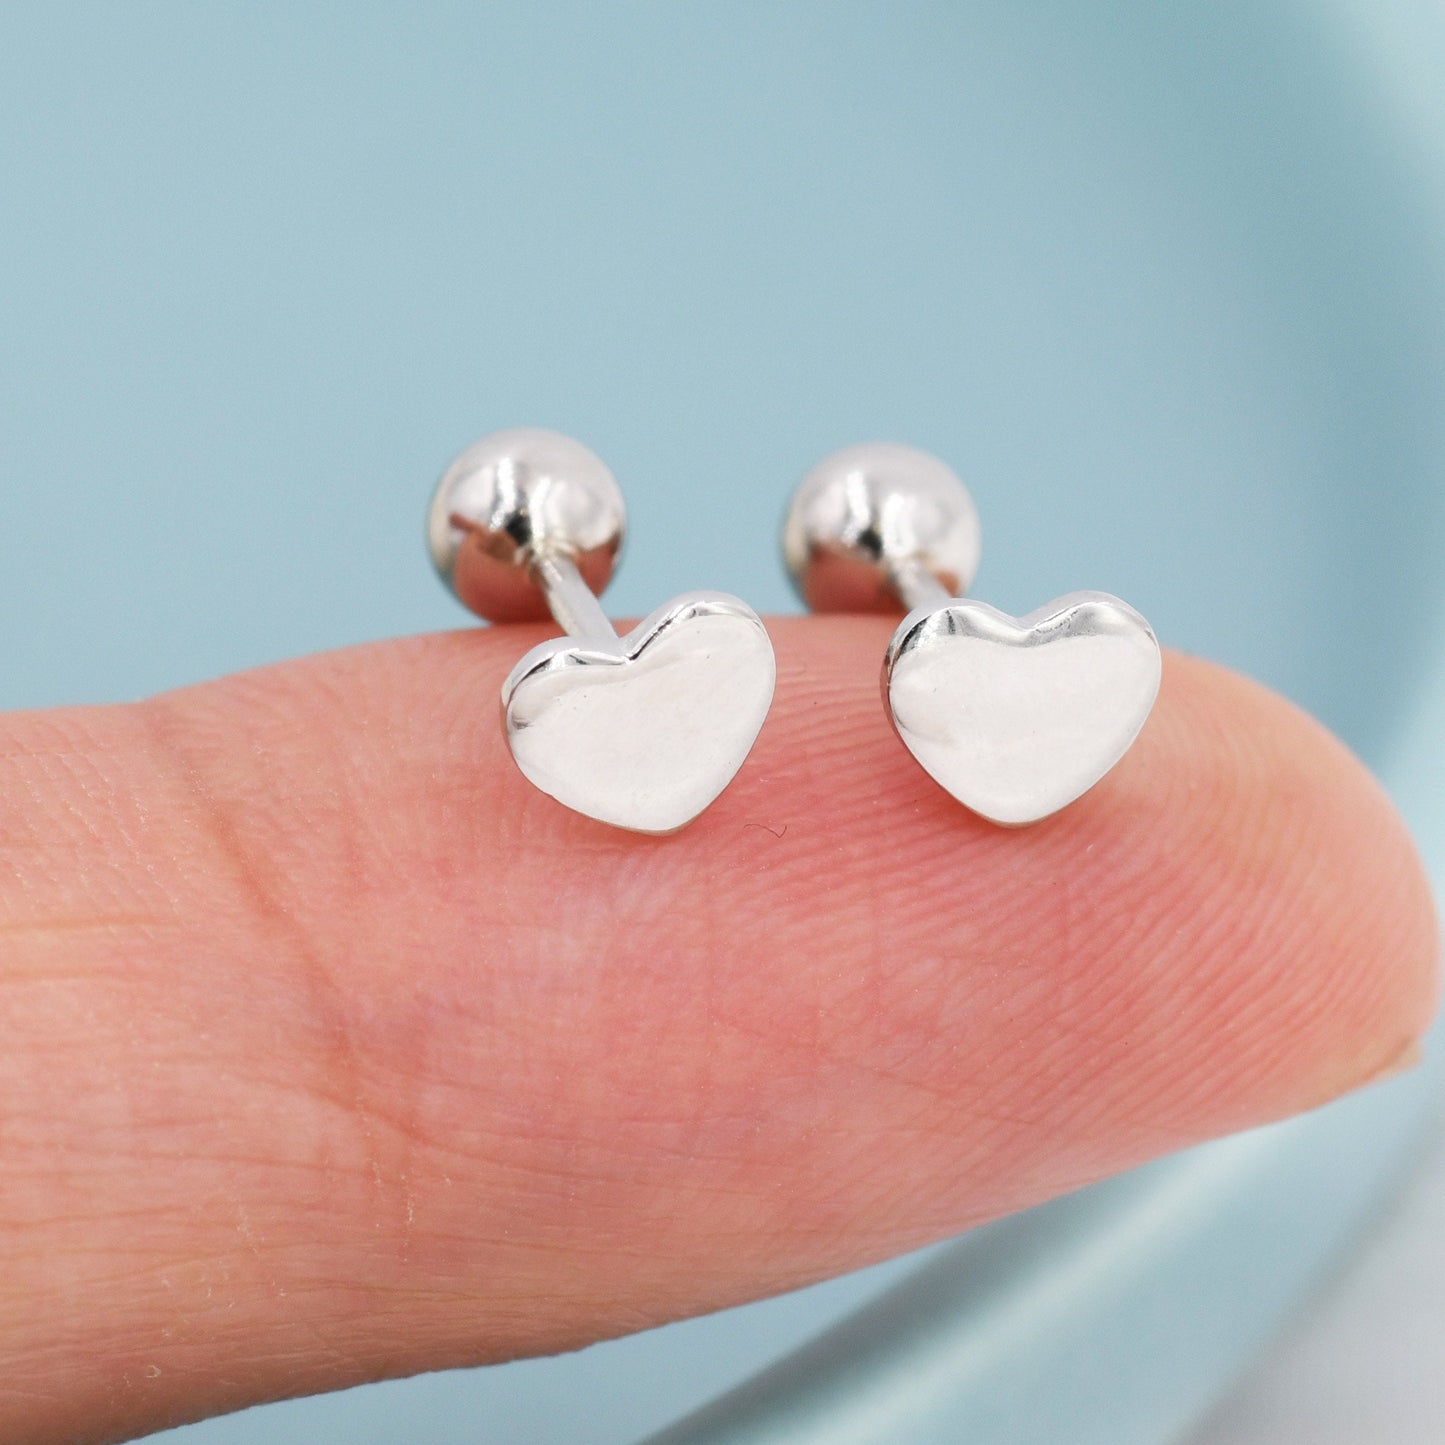 Heart Screwback  Earrings in Sterling Silver, Dainty Heart Screw Back Stacking Earrings, Barbell Earrings, Piercing Earrings